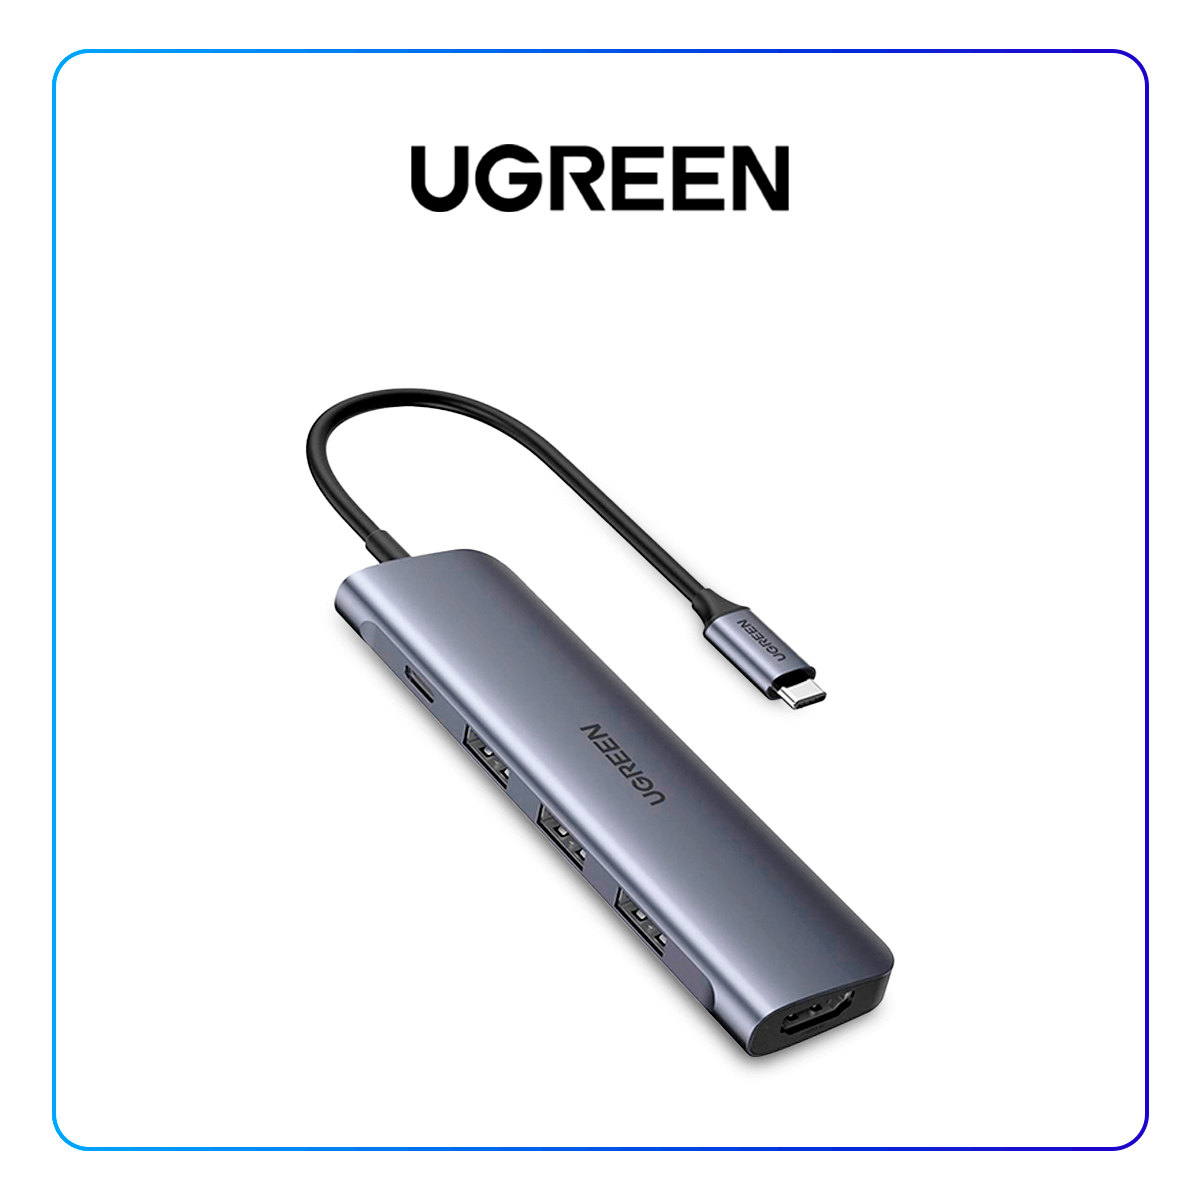 UGREEN HUB USB C 5 EN 1 CON HDMI 4K (3 X USB 3.0, 1 X HDMI, 1 X USB C) CM136 ( 50209 )